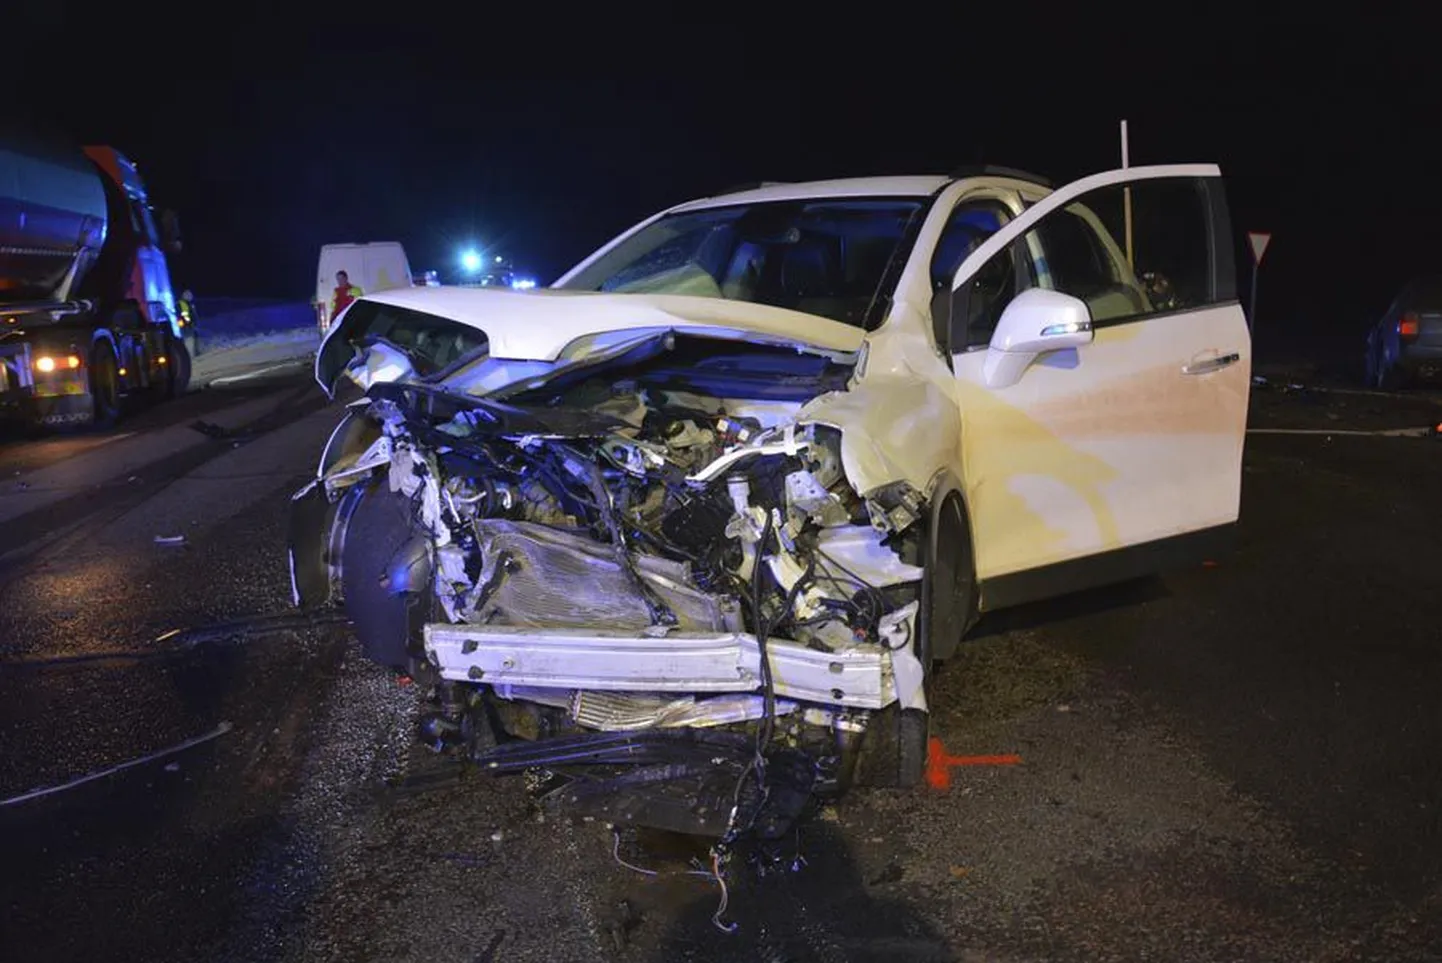 Pühapäeval nelja auto kokkupõrkega lõppenud õnnetus sai alguse sellest, et valge Chevrolet ei andnud teed peateel liikuvale Volkswagen Passatile.